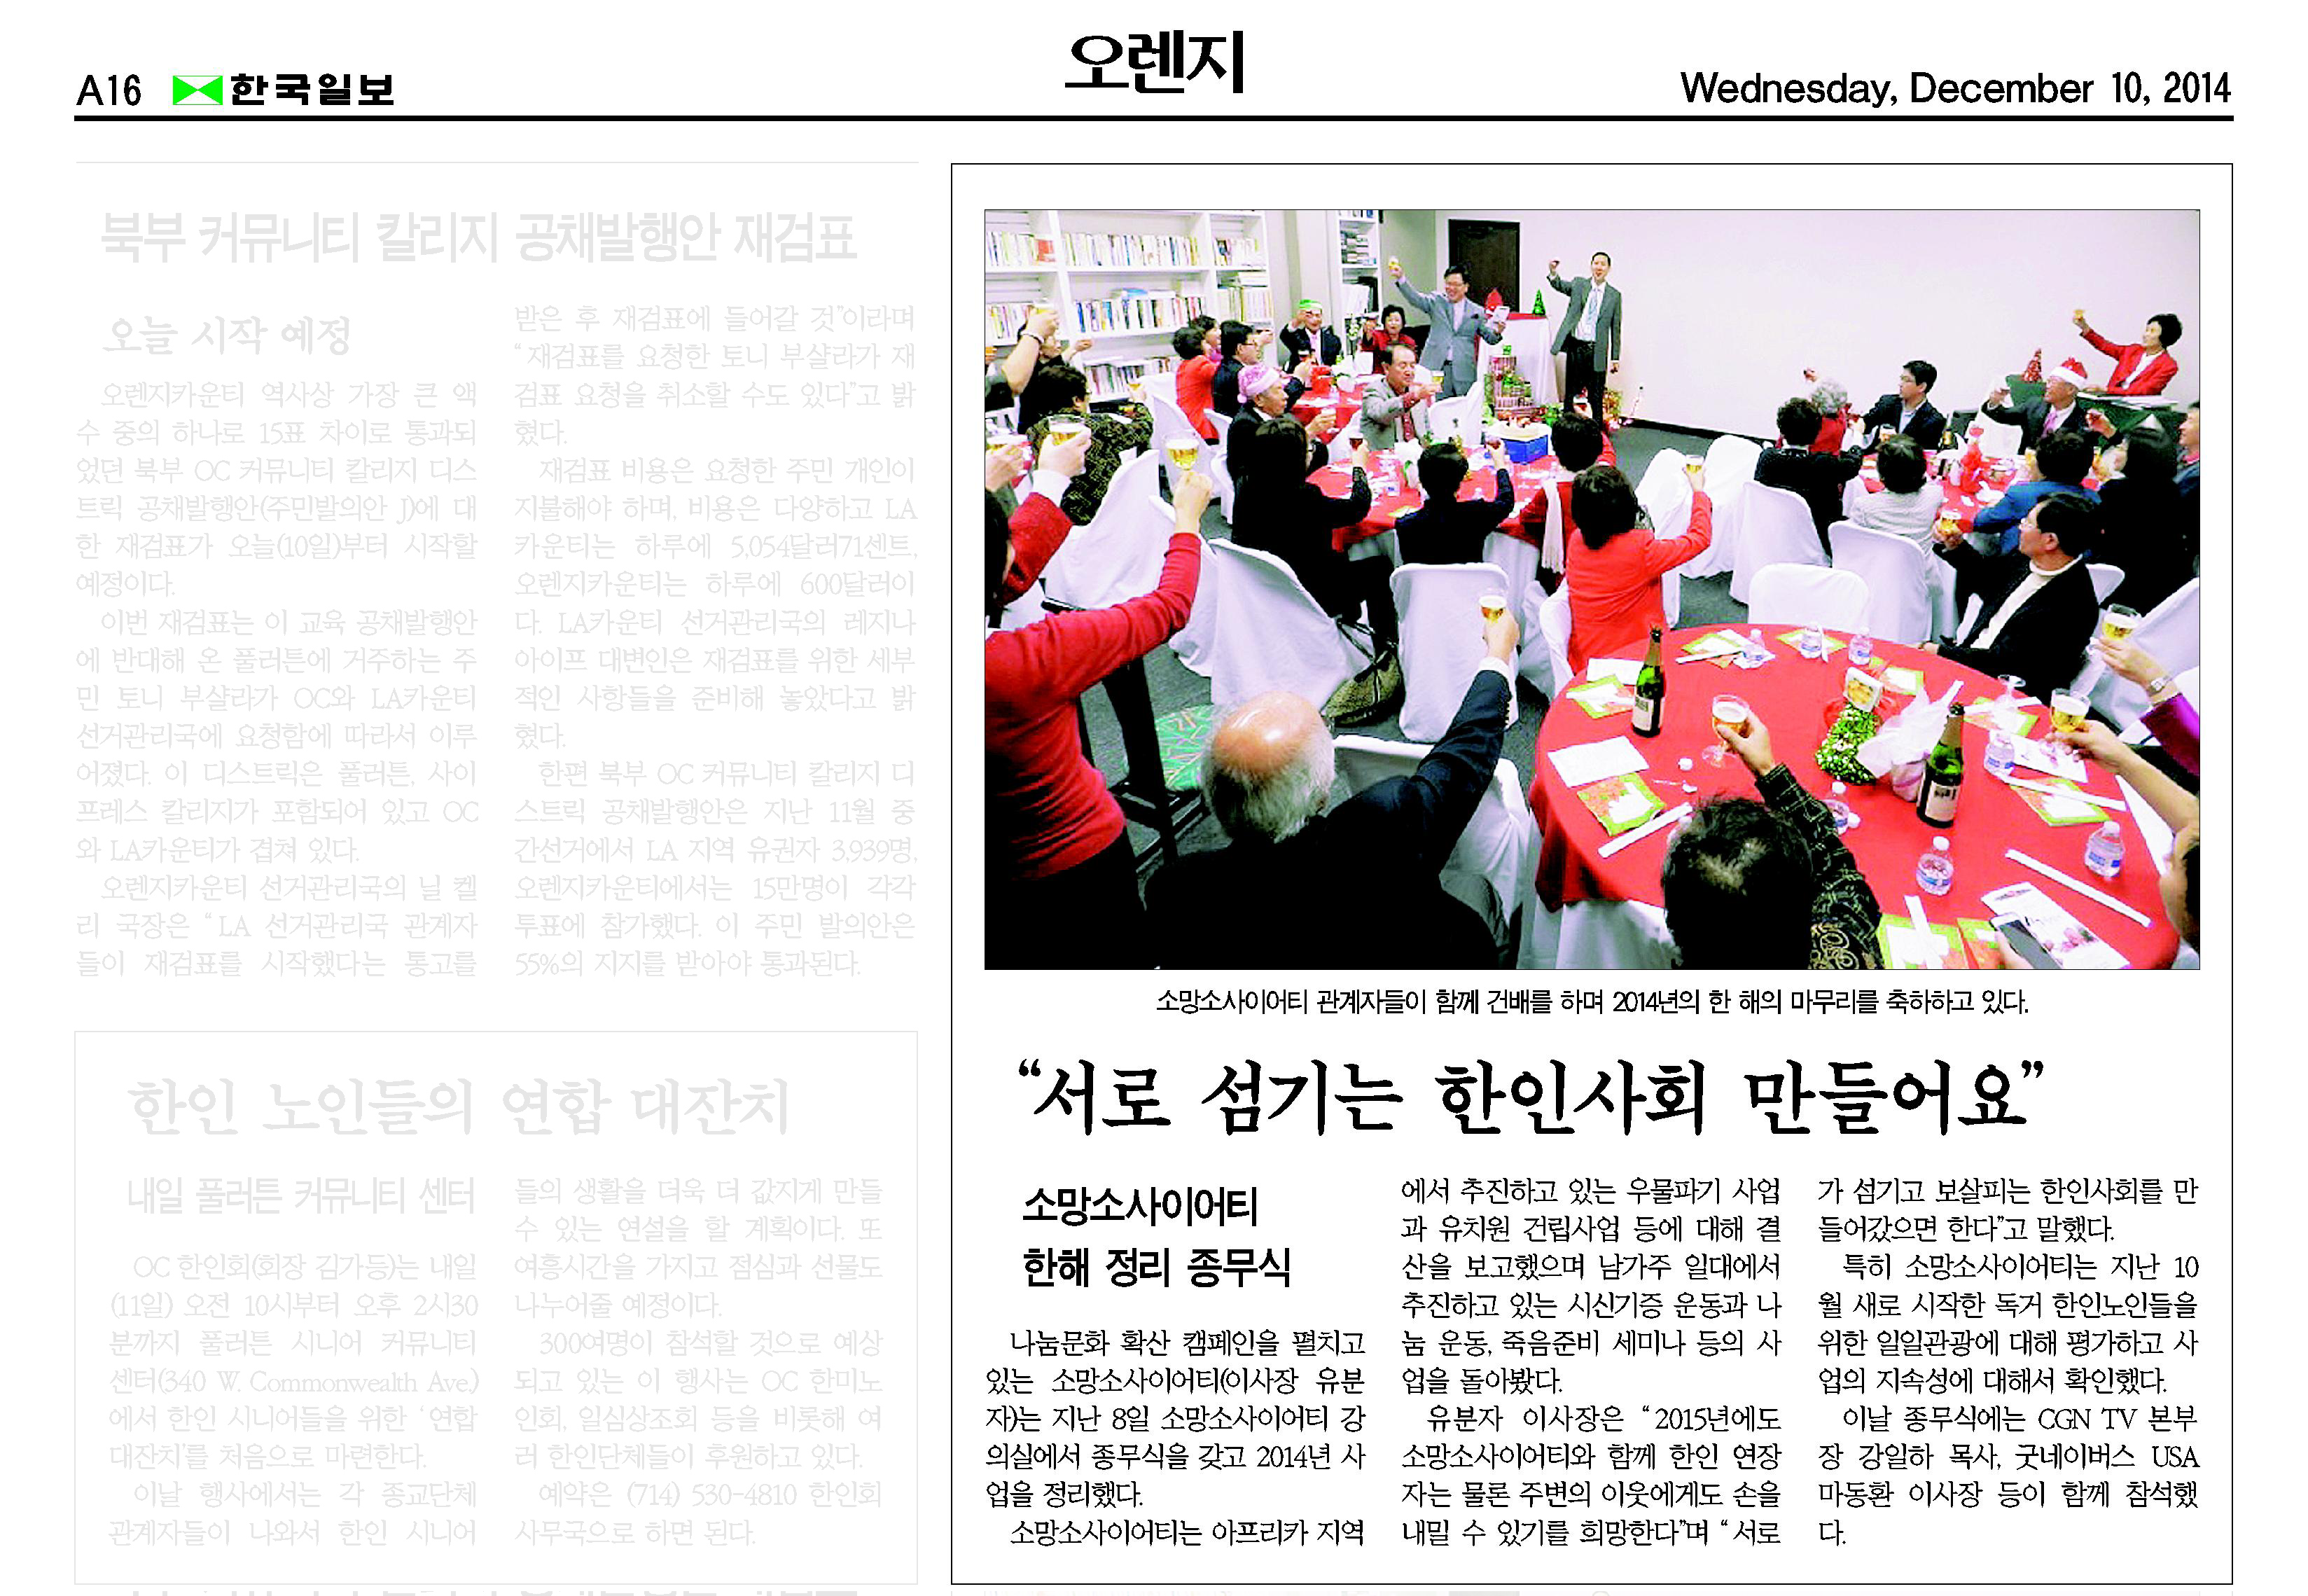 “서로 섬기는 한인사회 만들어요” 2014년 12월 10일 한국일보